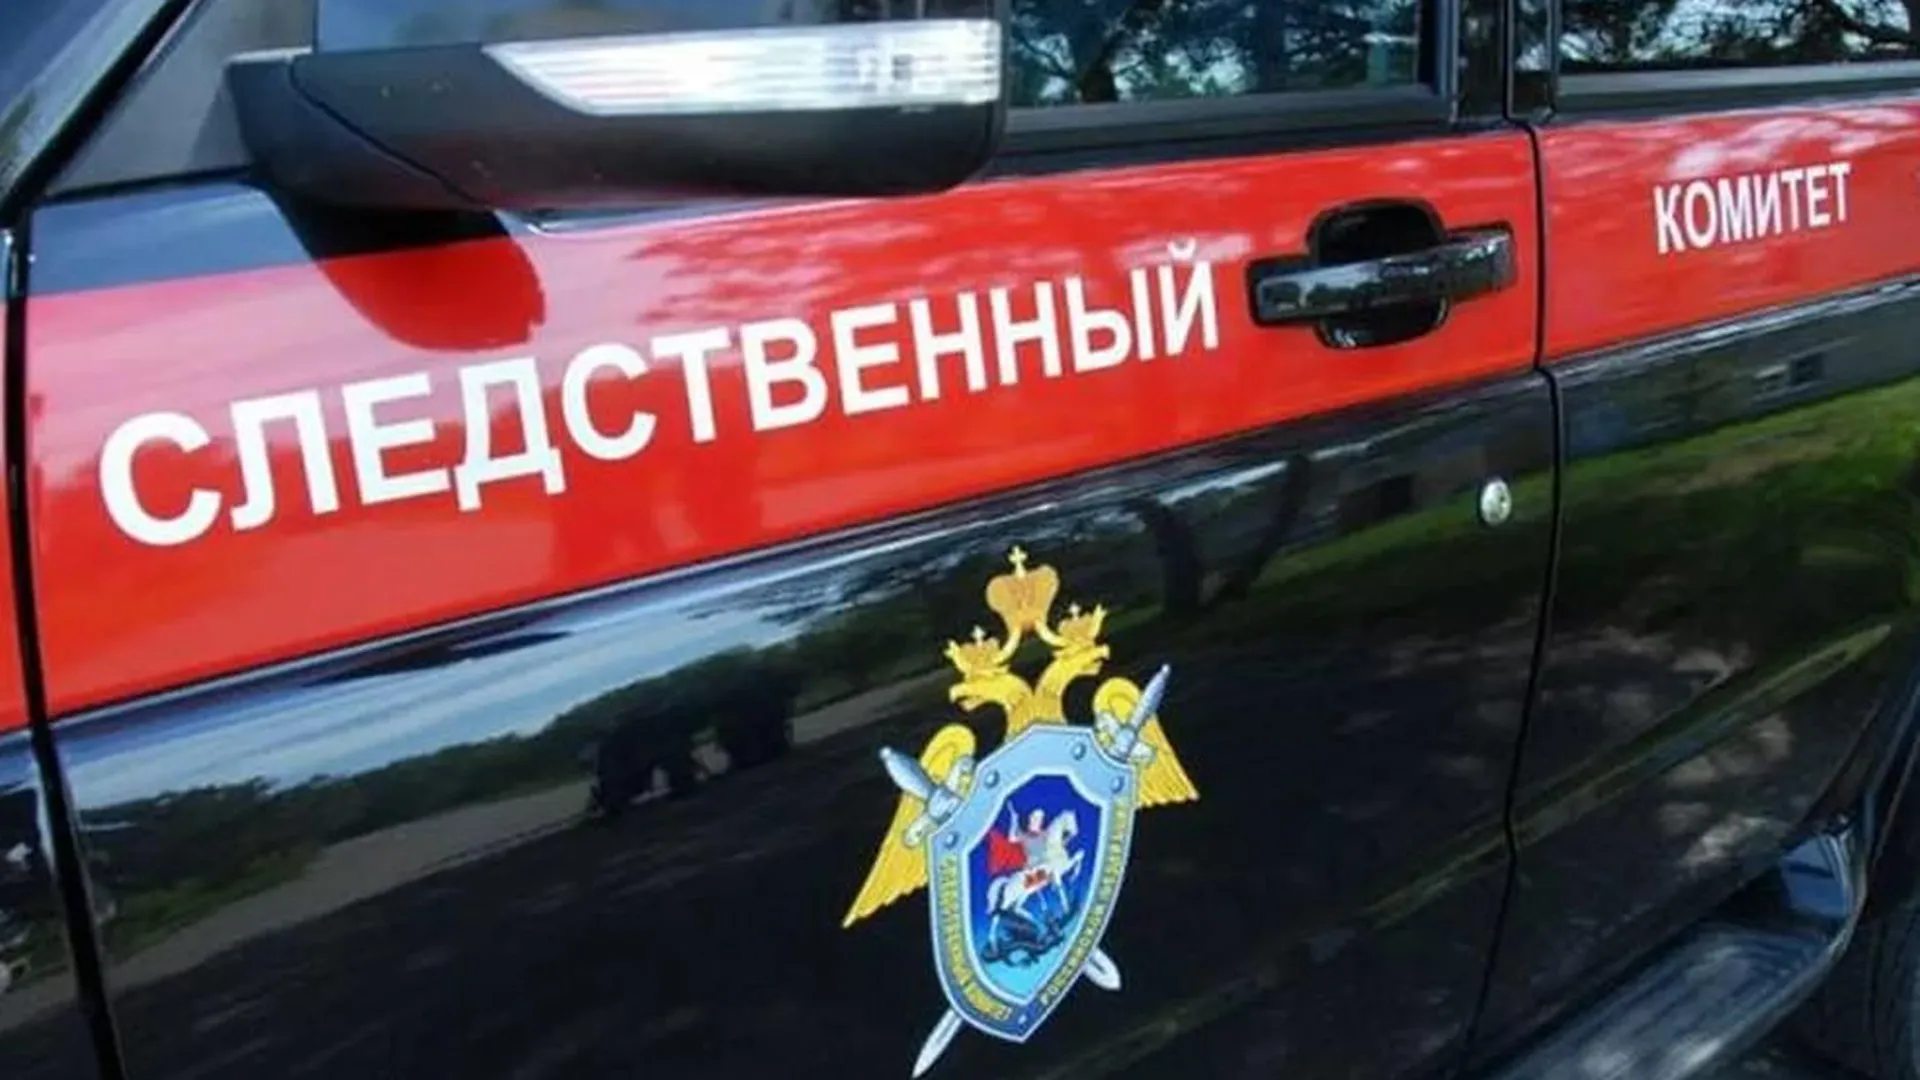 Появились доказательства связи террористов из Crocus City Hall с Украиной